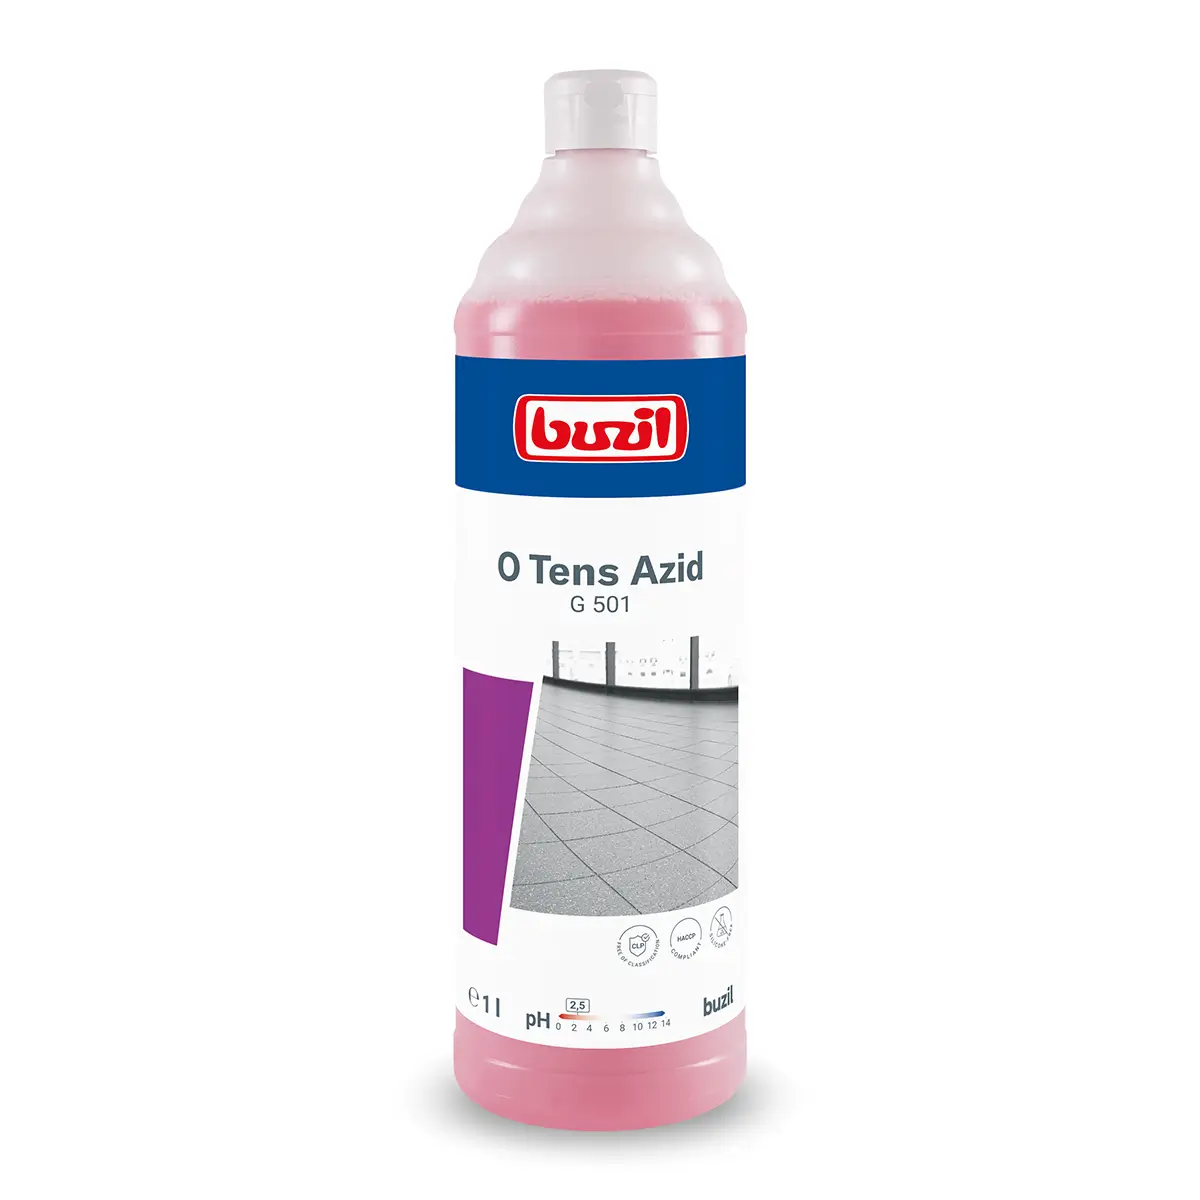 Buzil O Tens Azid G501 tensidfreier Feinsteinzeugreiniger 1 Liter Flasche